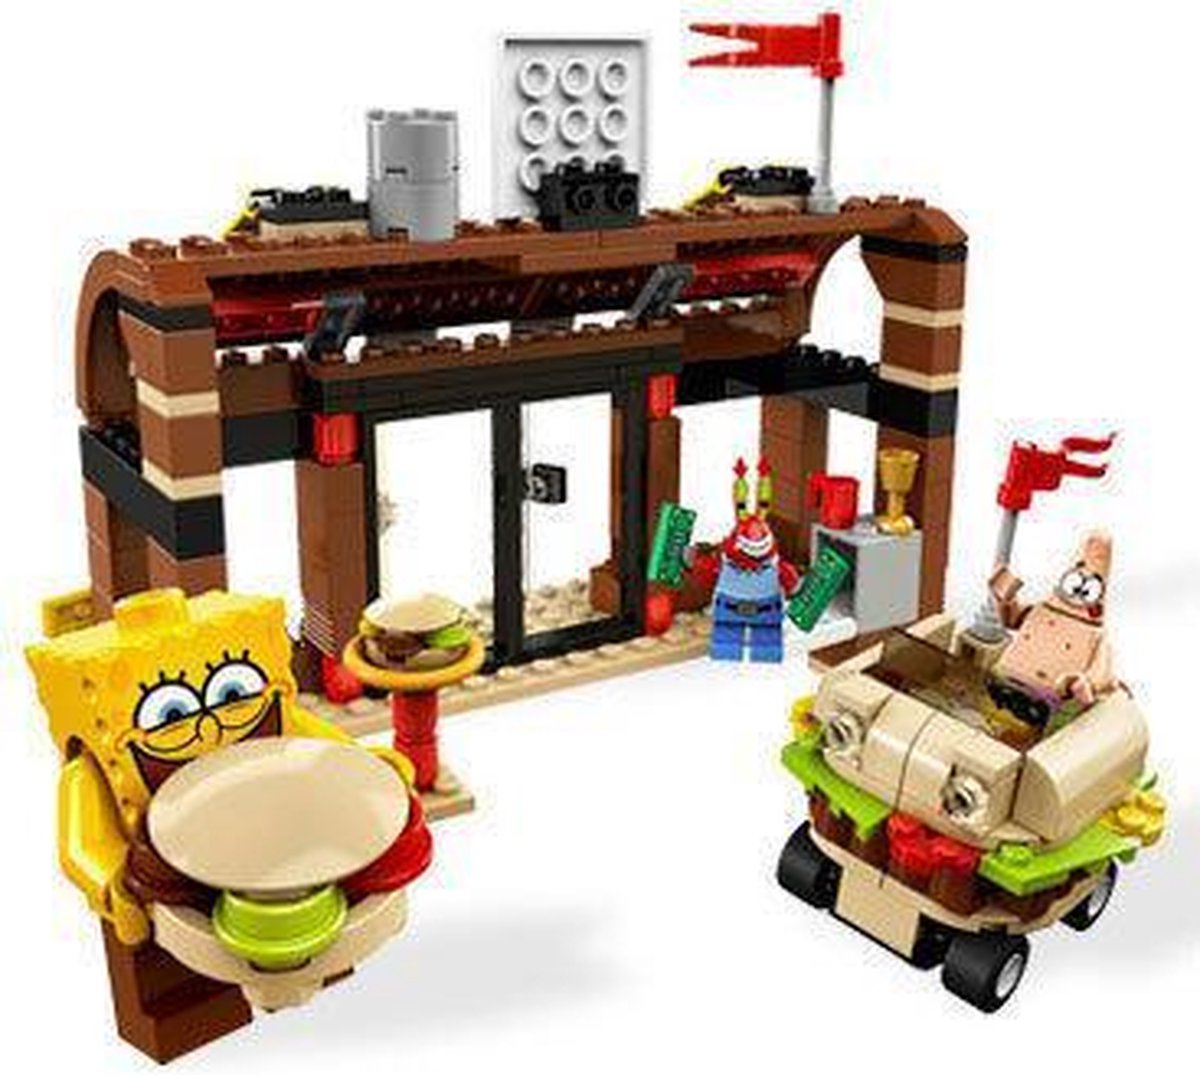 cel Hulpeloosheid Redelijk LEGO Spongebob Avonturen in De Krokante Krab - 3833 | bol.com